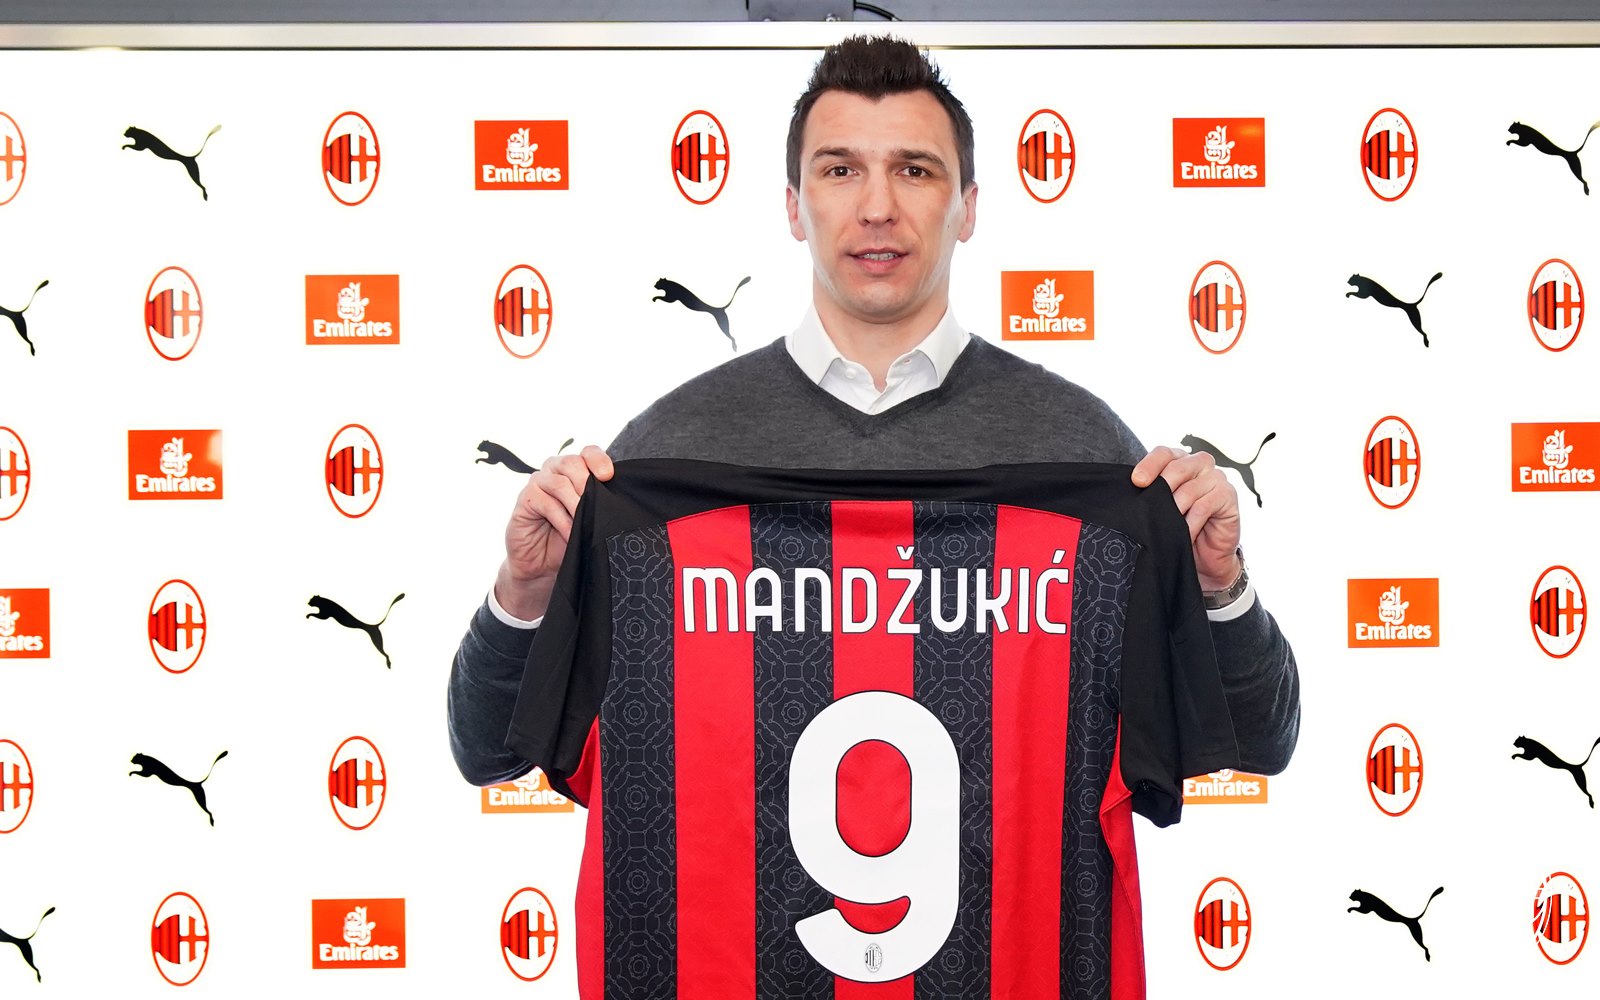 Mandzukic: “Milan, sarà un onore. Sono pronto a combattere. Ringrazio la dirigenza per questa opportunità”